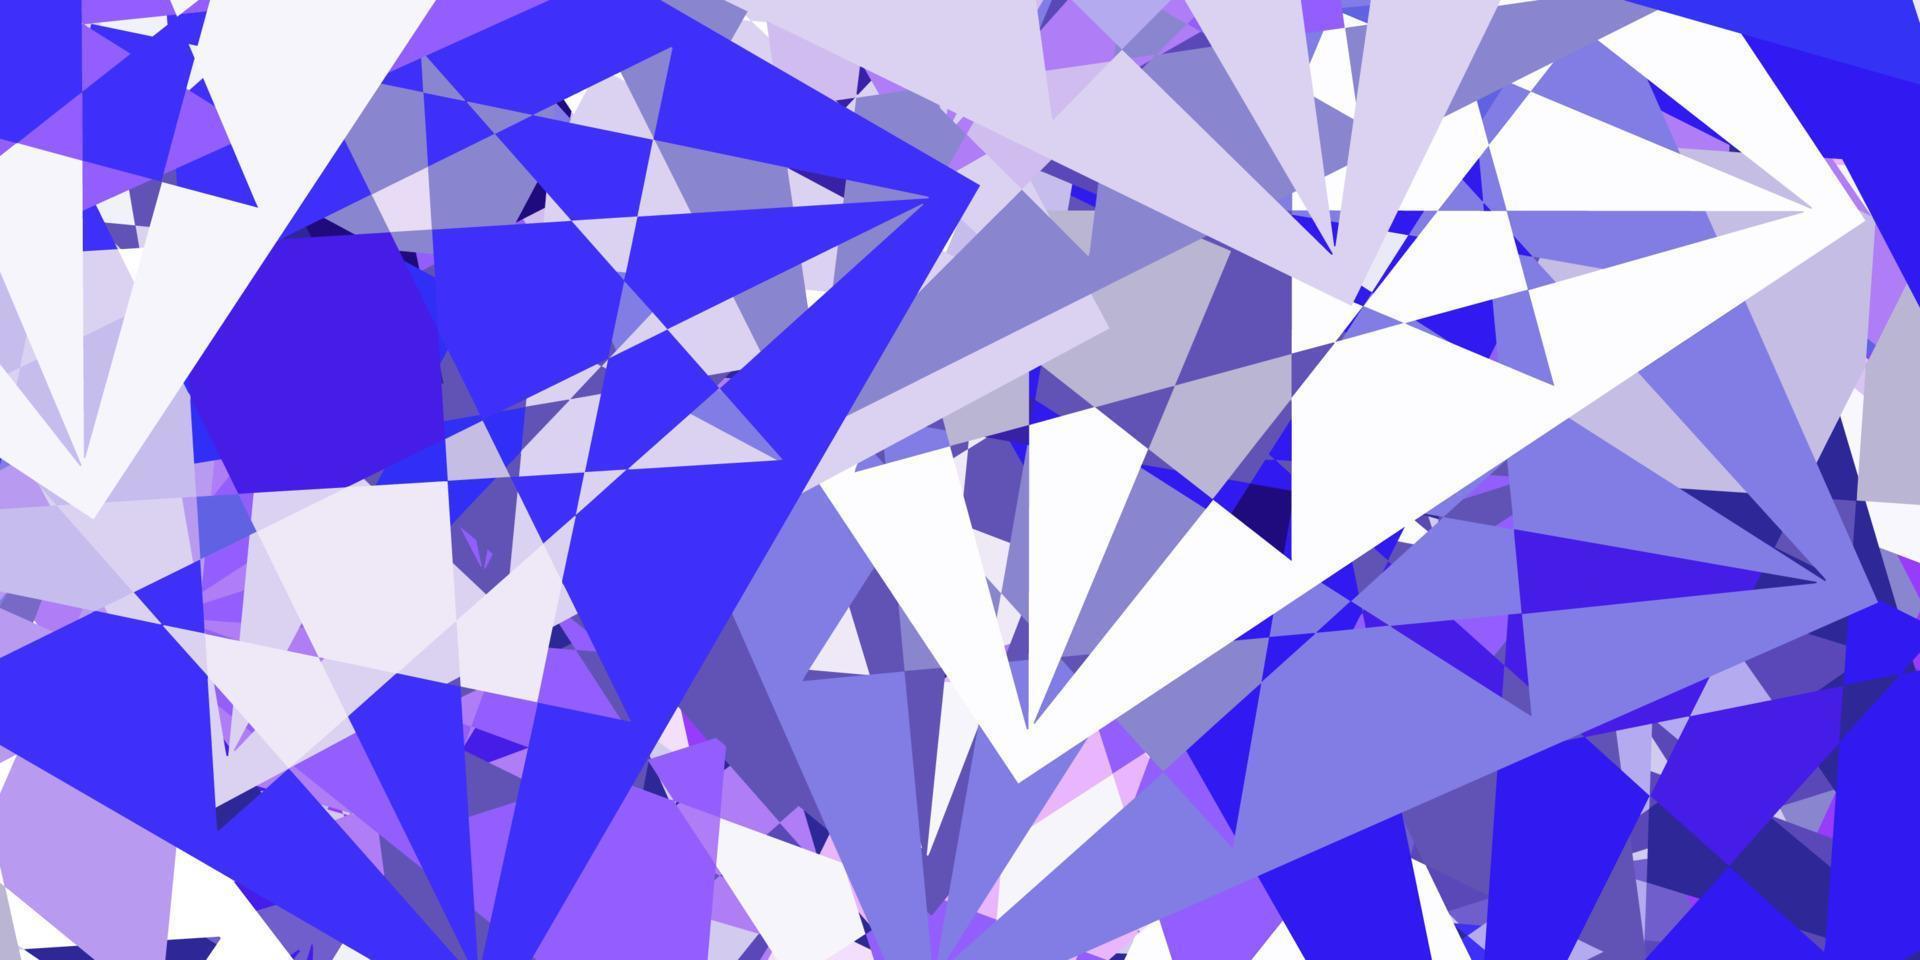 plantilla de vector púrpura claro con formas triangulares.